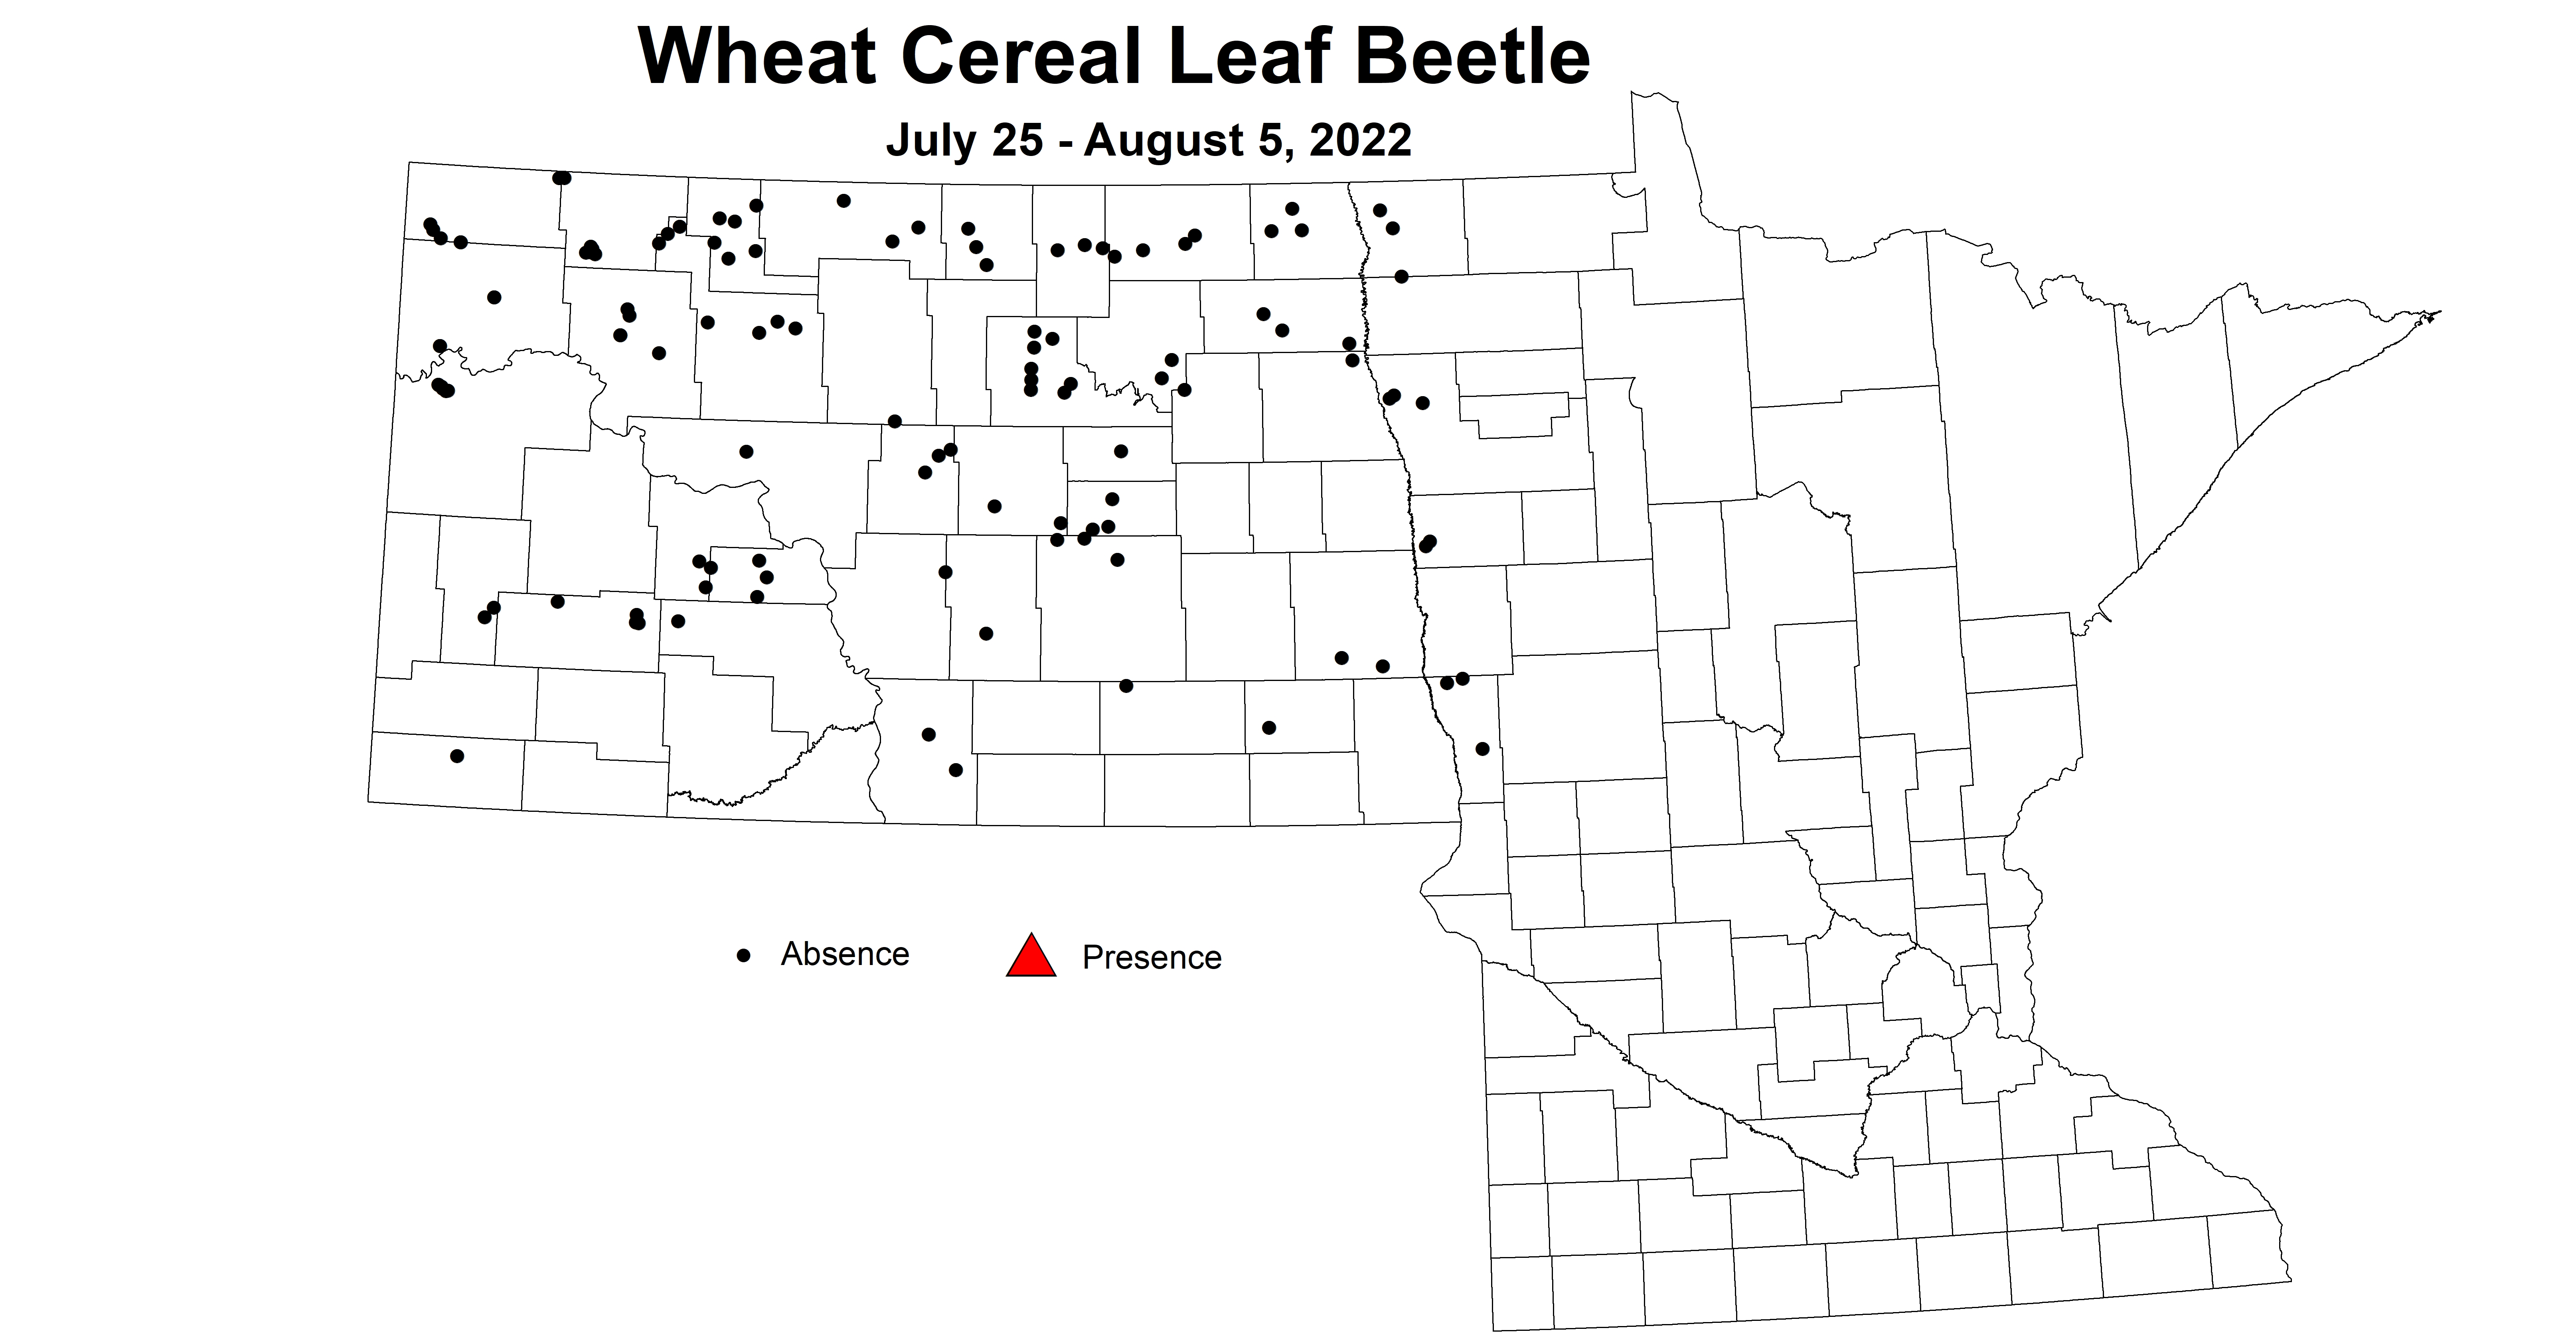 wheat cereal leaf beetle 2022 7.25-8.5